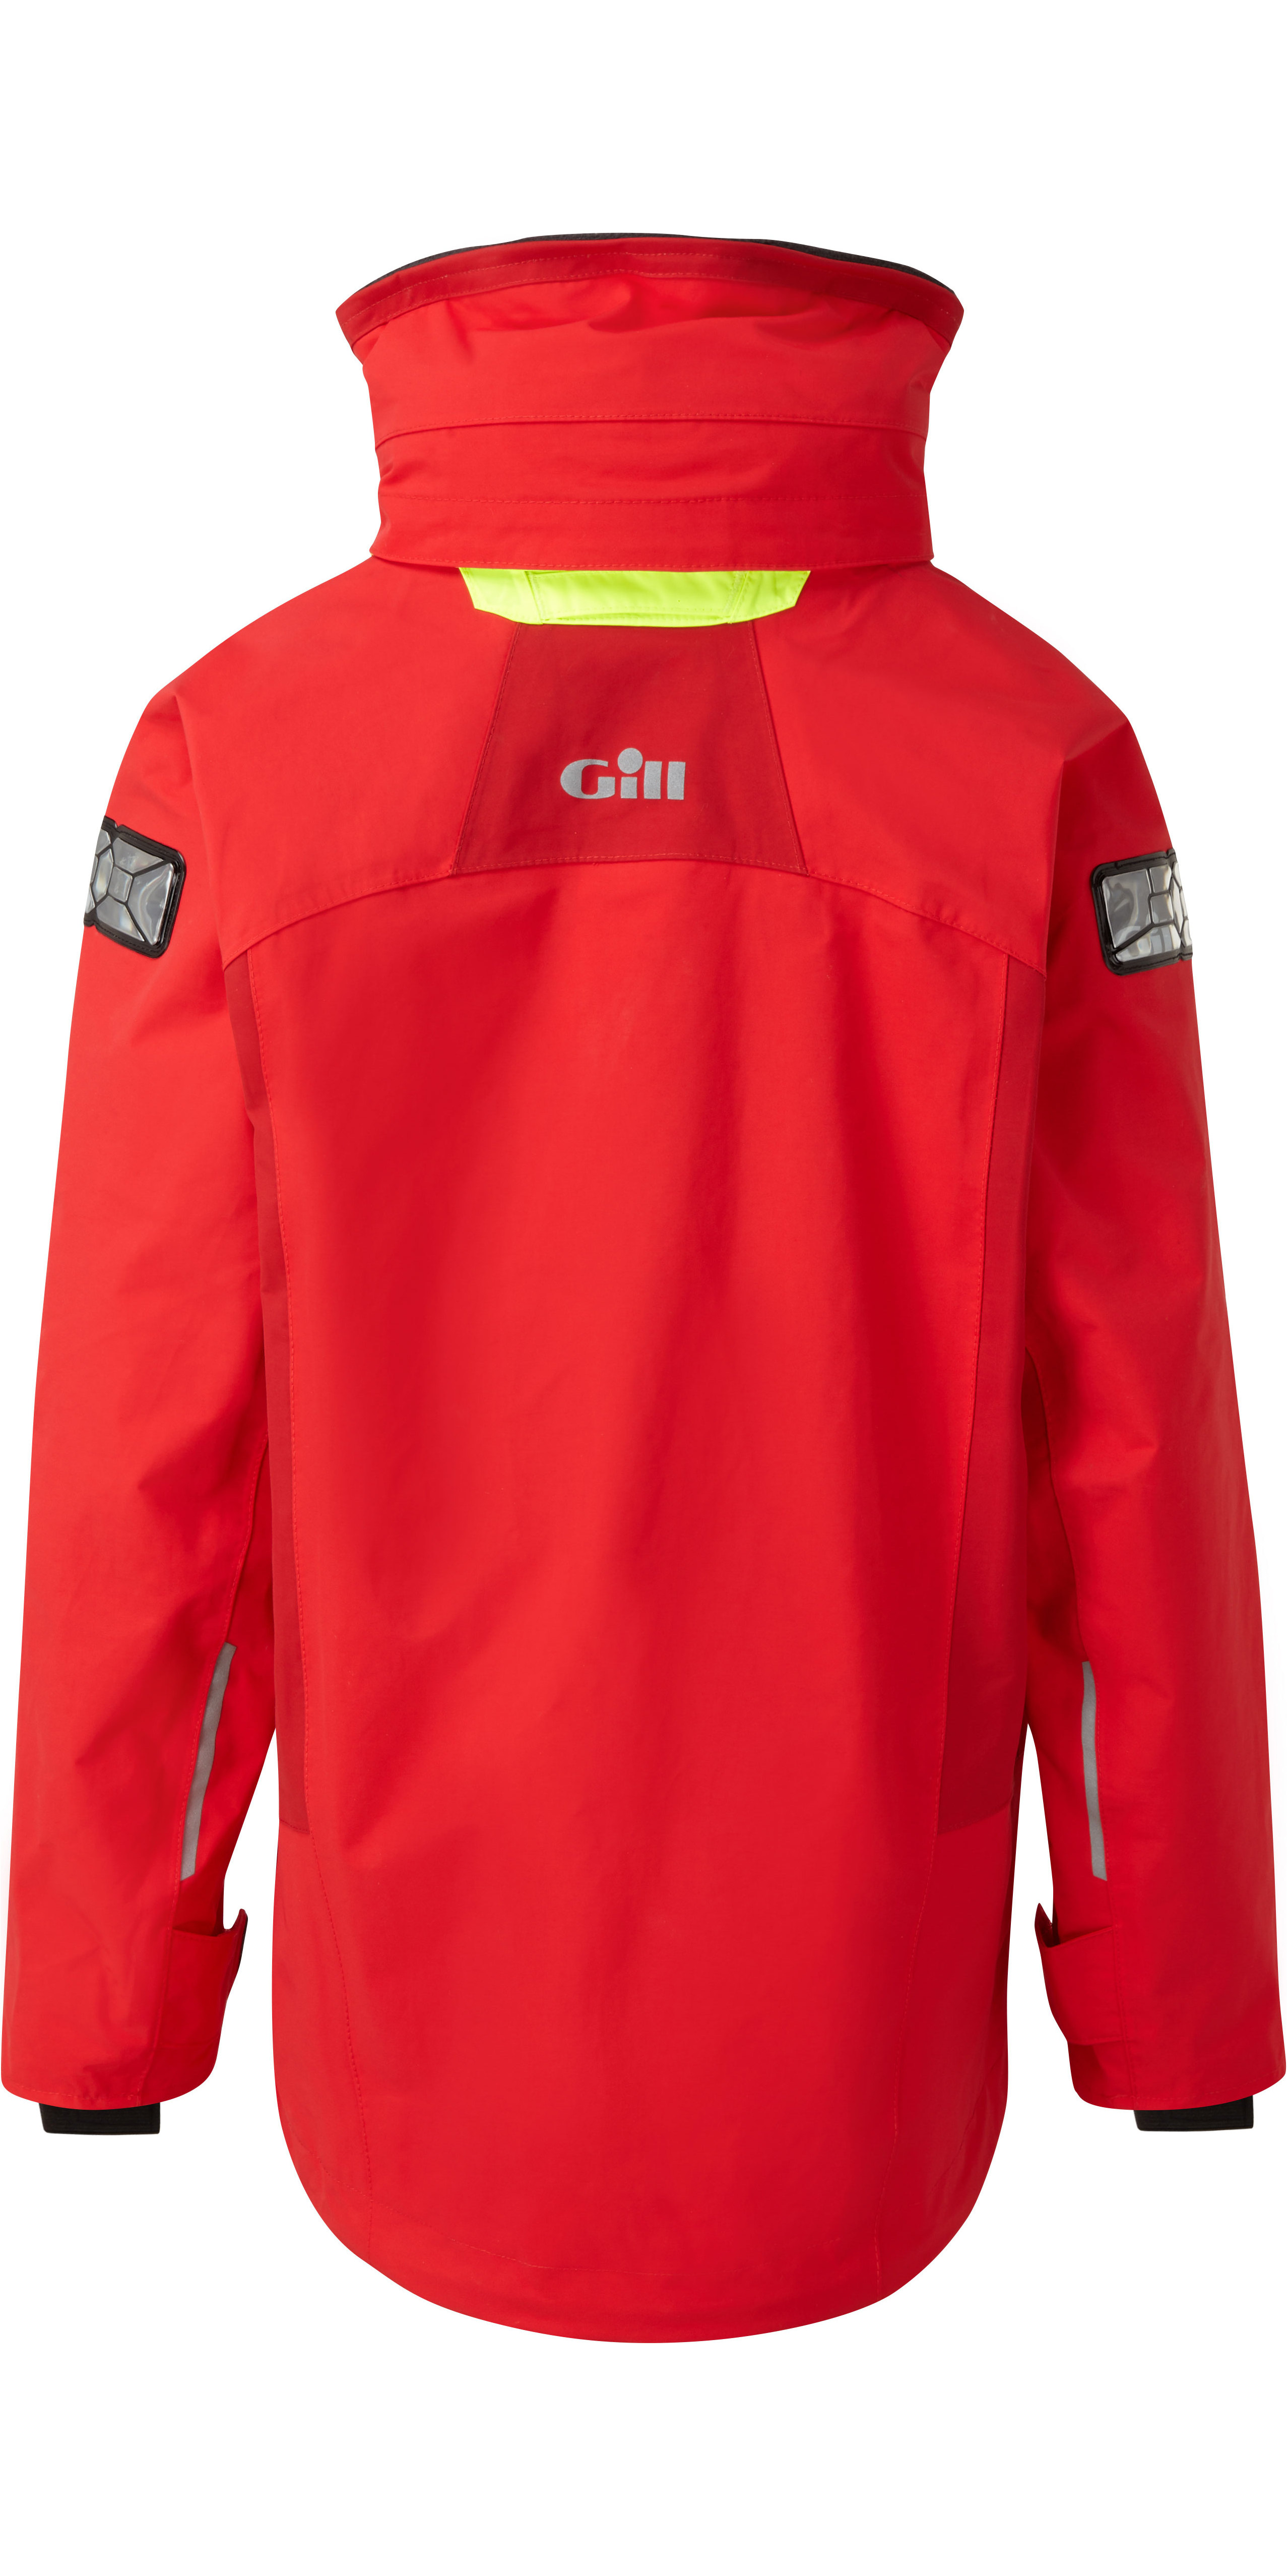 2020 Gill Junior Coastal OS3 Jacket RED OS31JJ - Sailing - Sailing ...